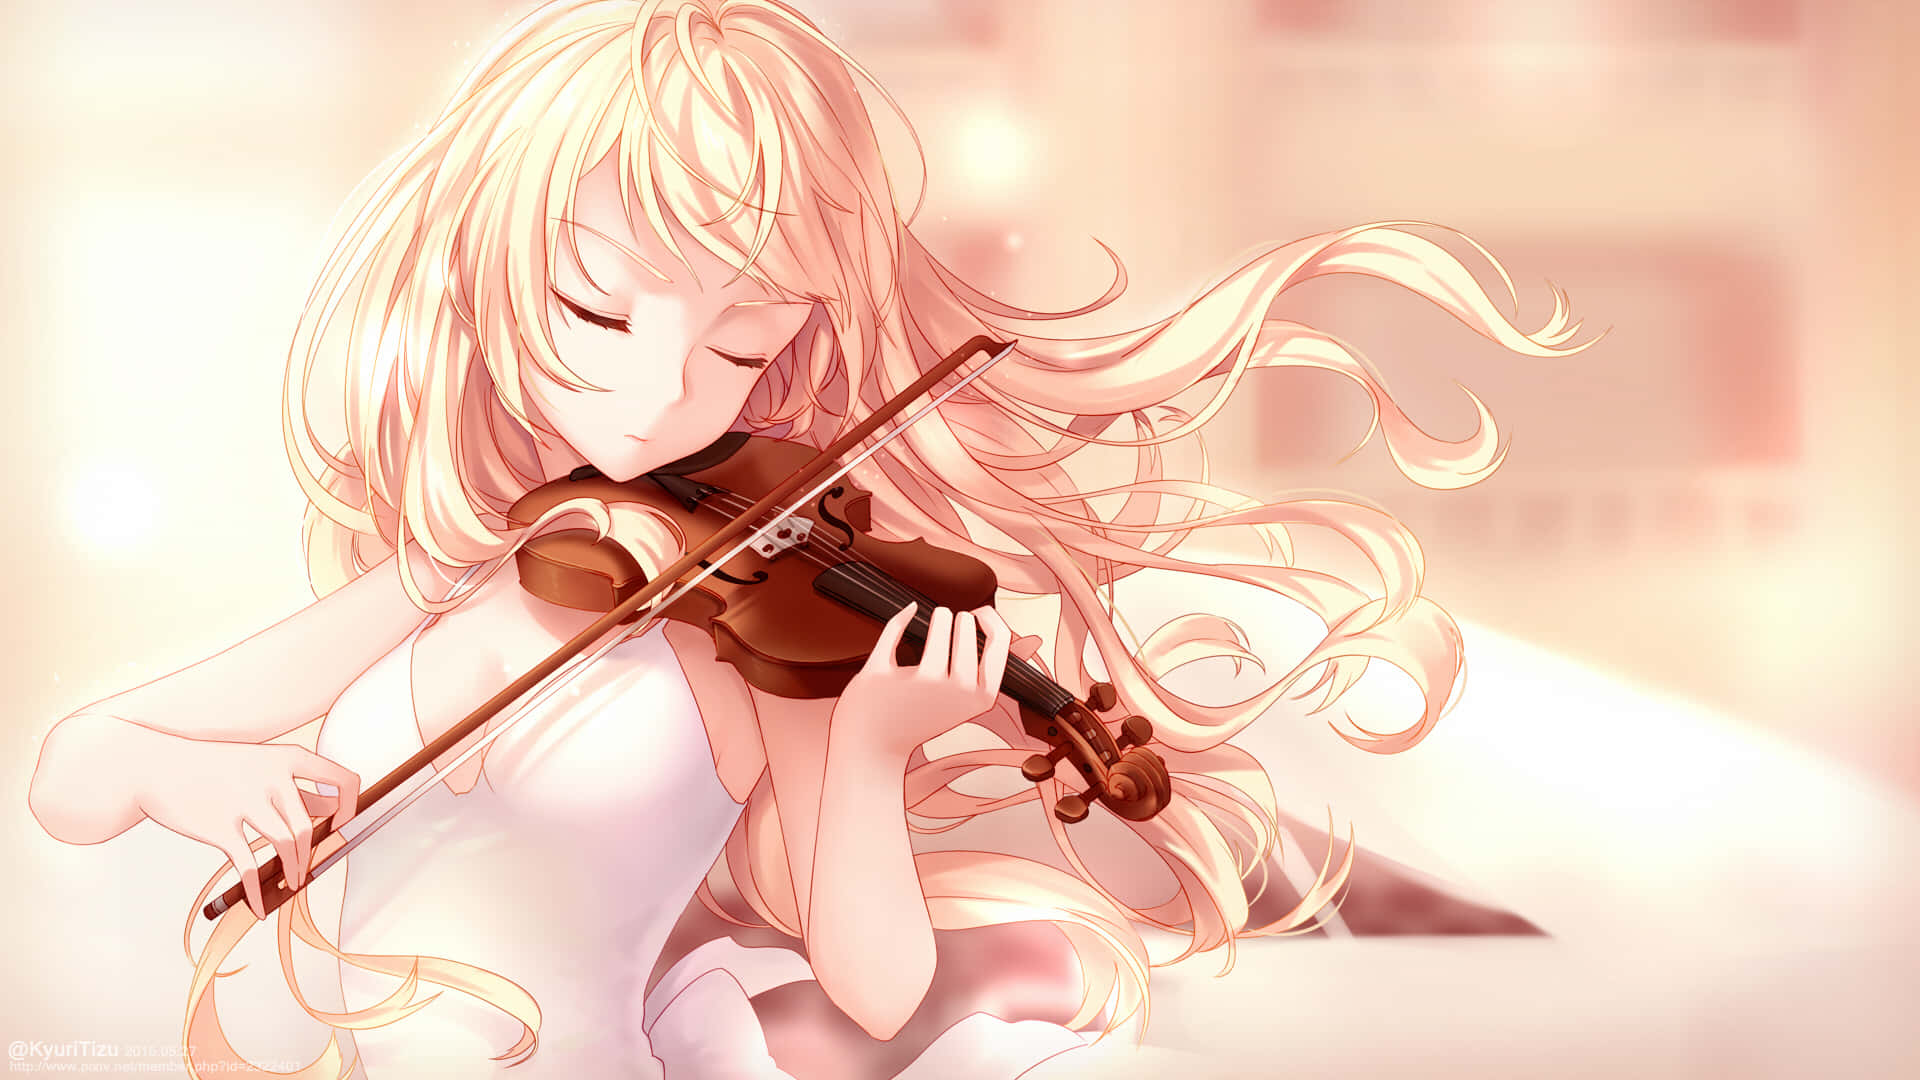 Kaori Miyazono spiller lidenskabeligt sin fiol på en præstation.